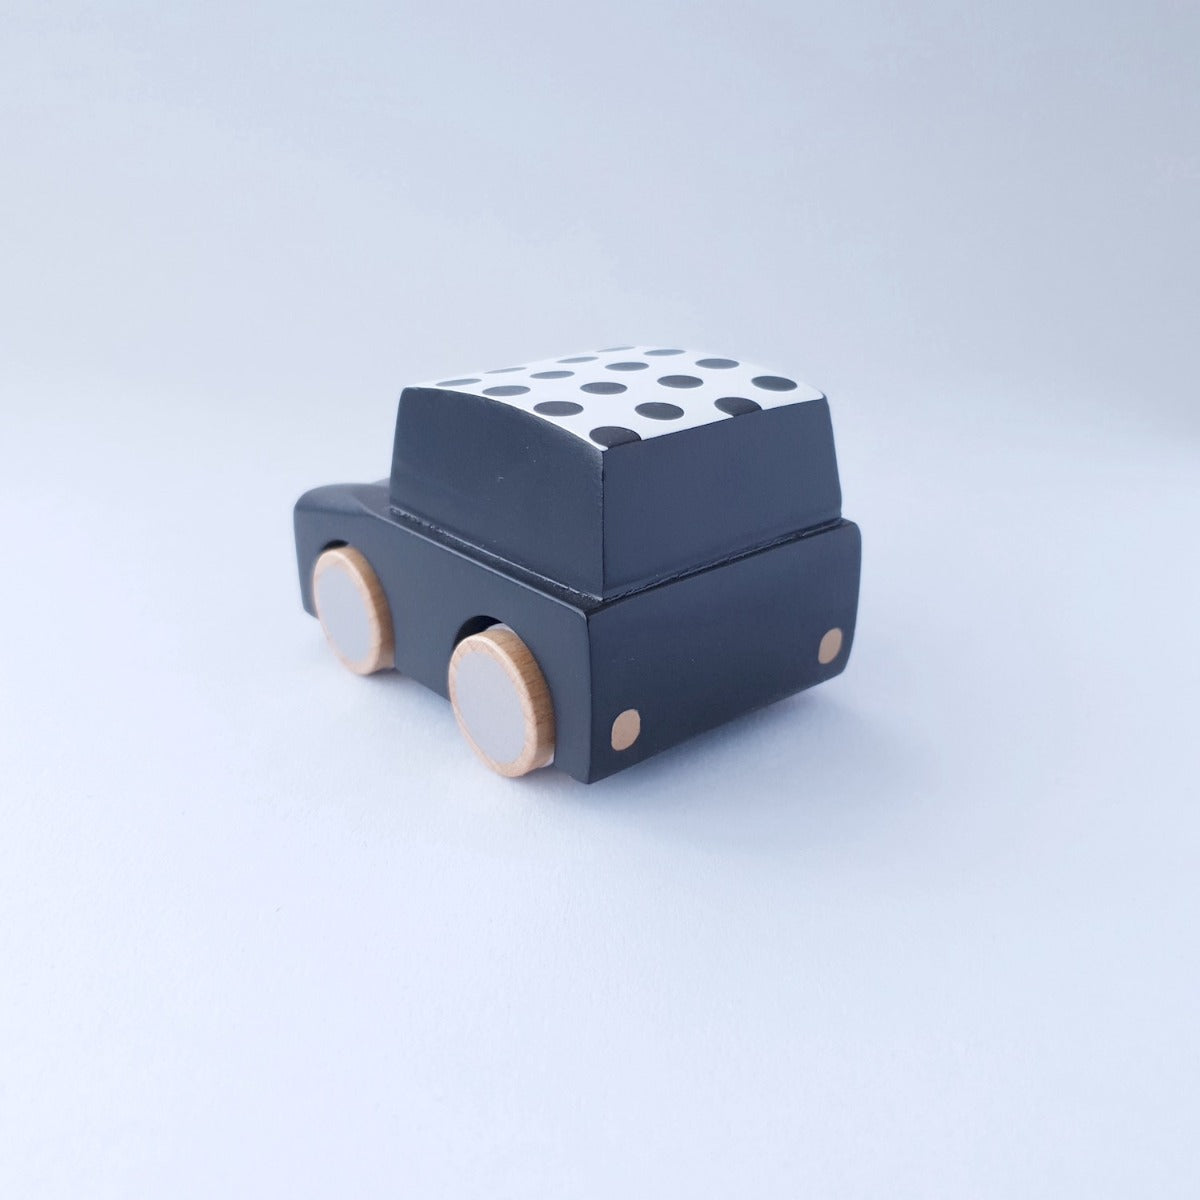 Kiko+ & gg* Wooden Toy Car - Black Dots